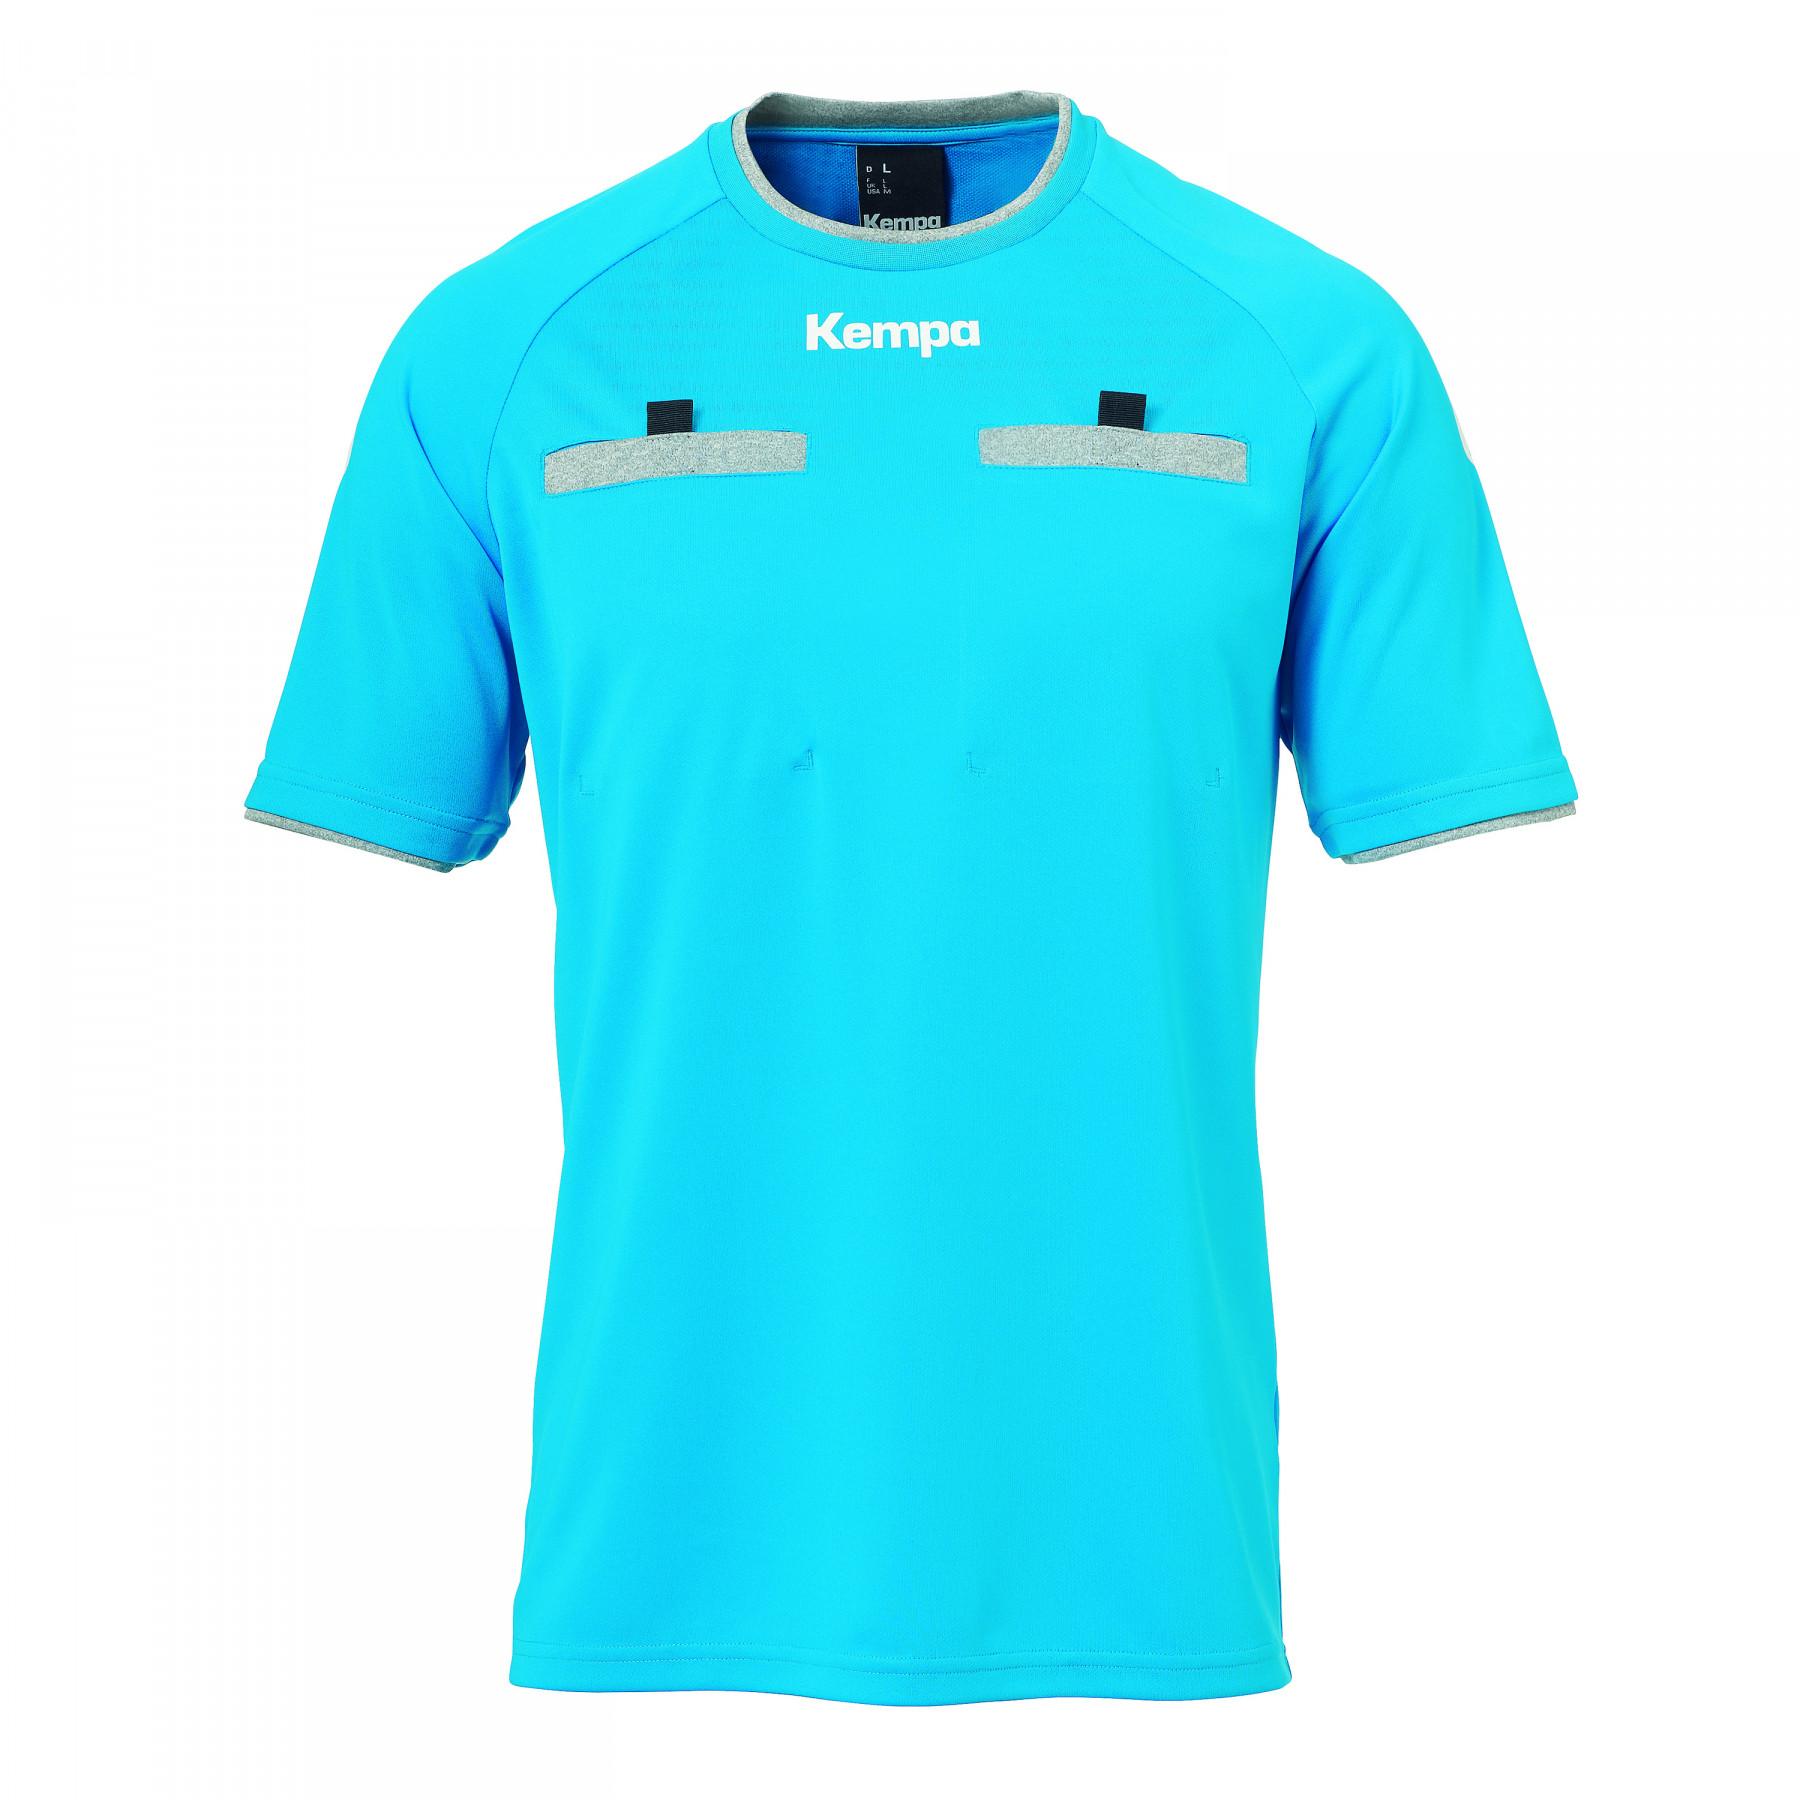 Referee's jersey Kempa